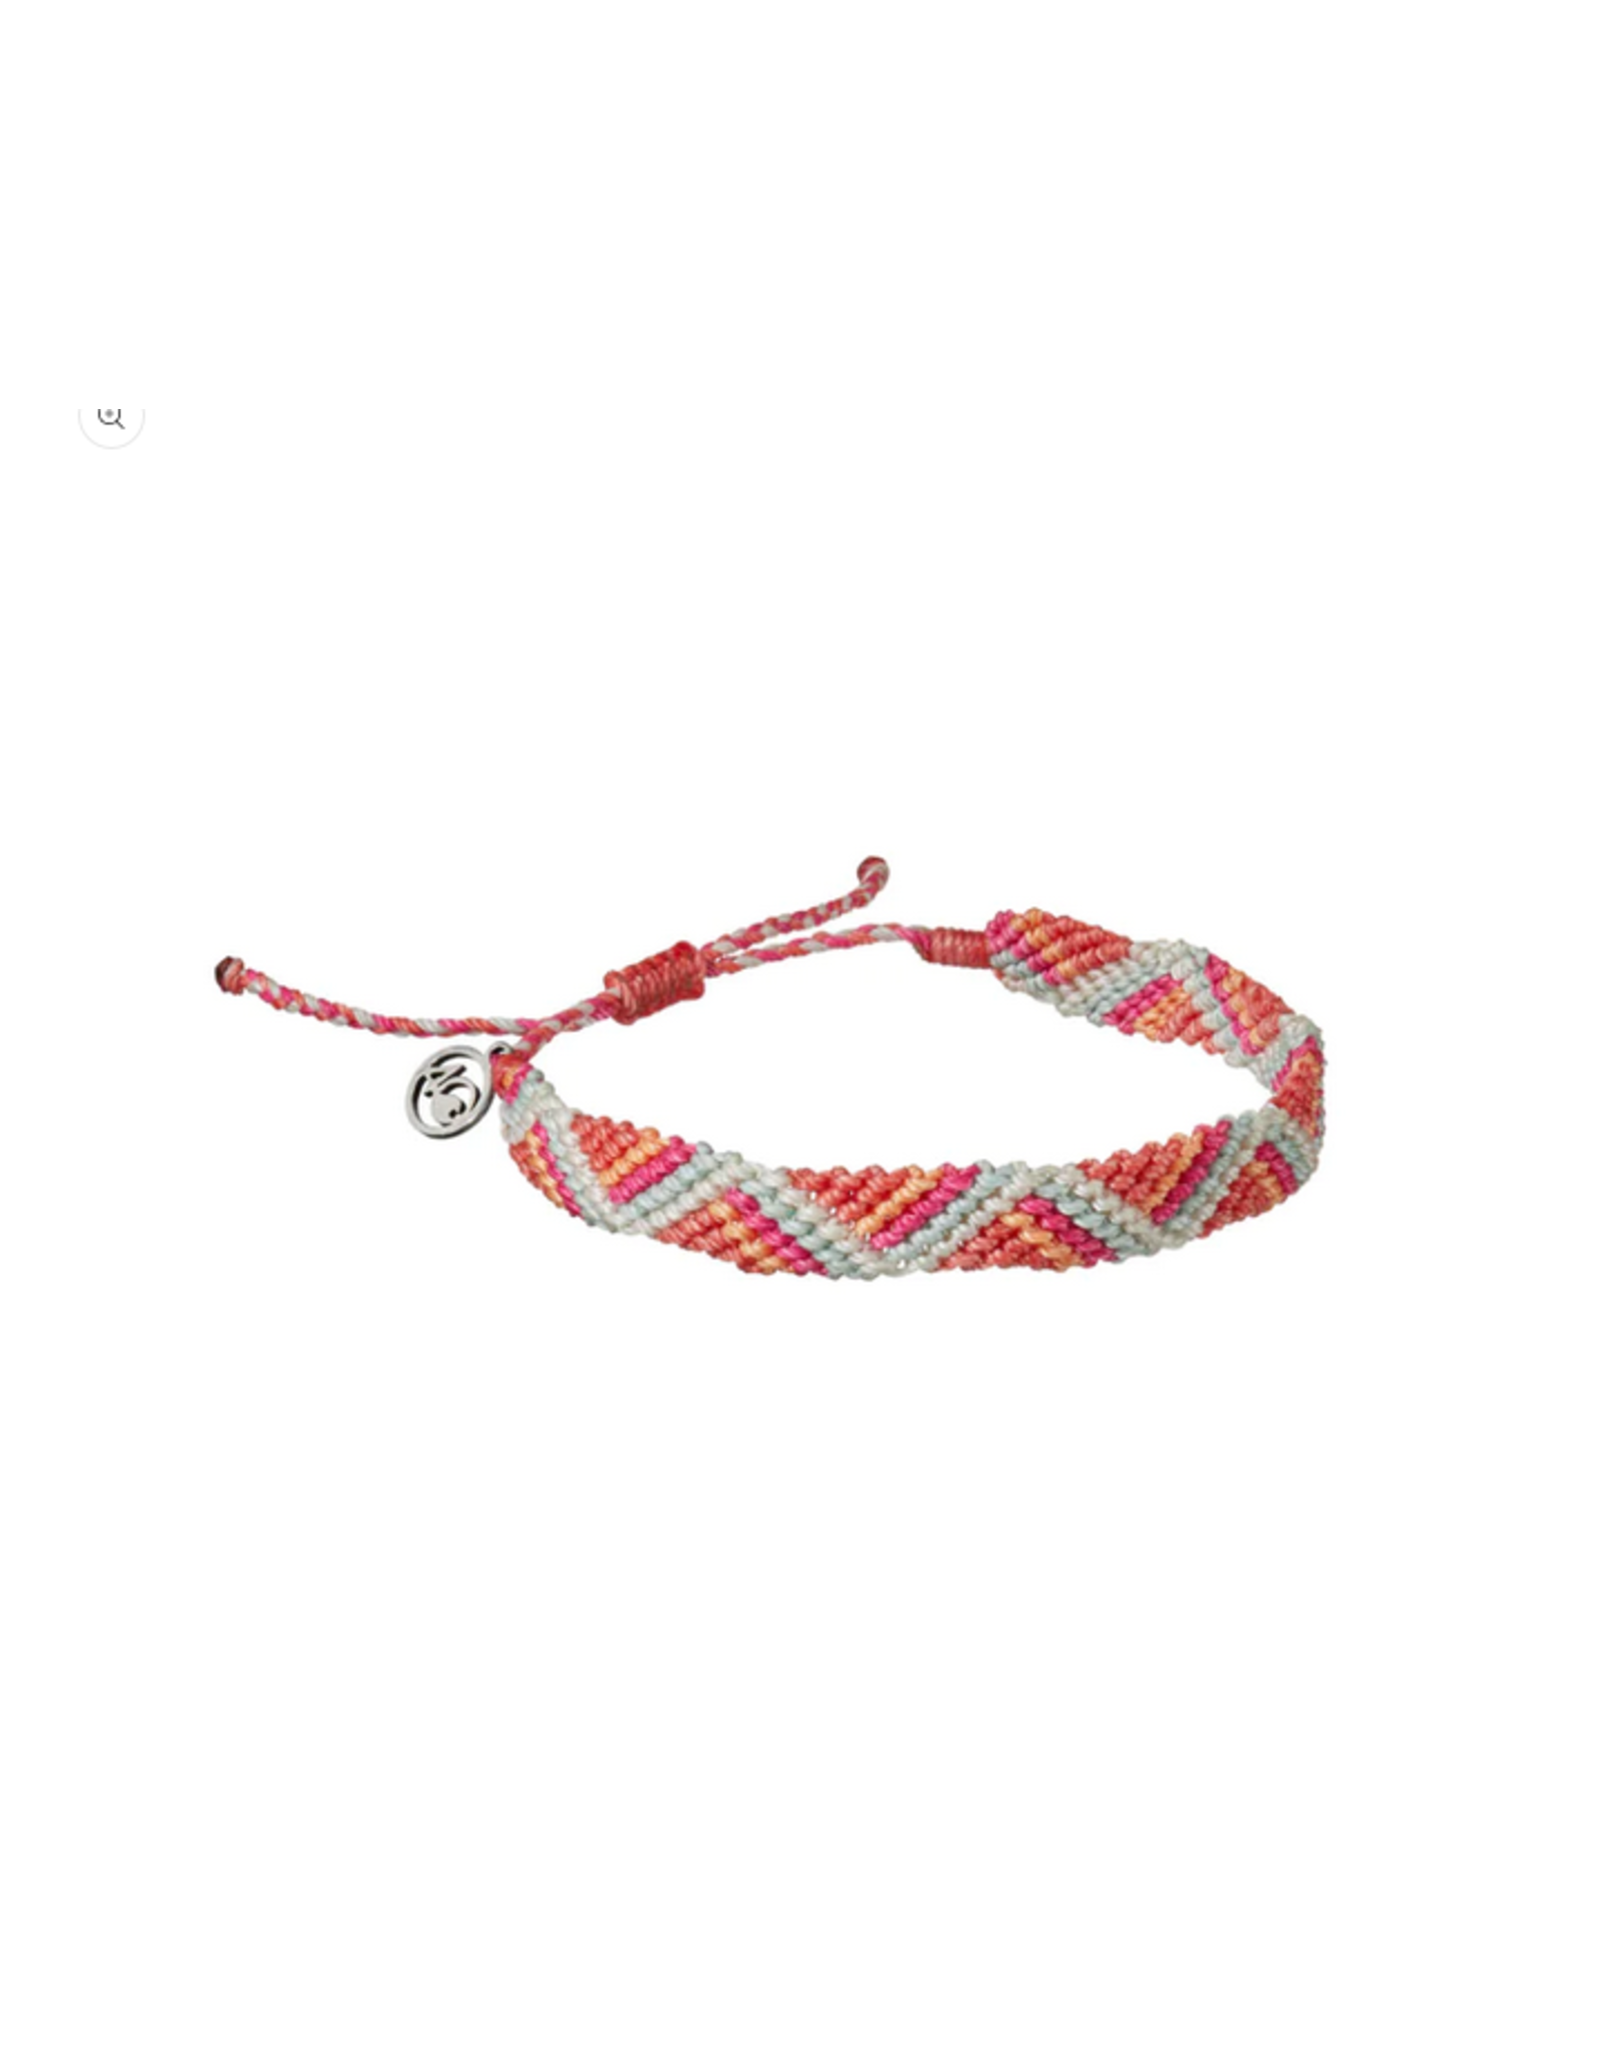 4Ocean 4Ocean 22216023 Bali Riptide Braided Bracelet